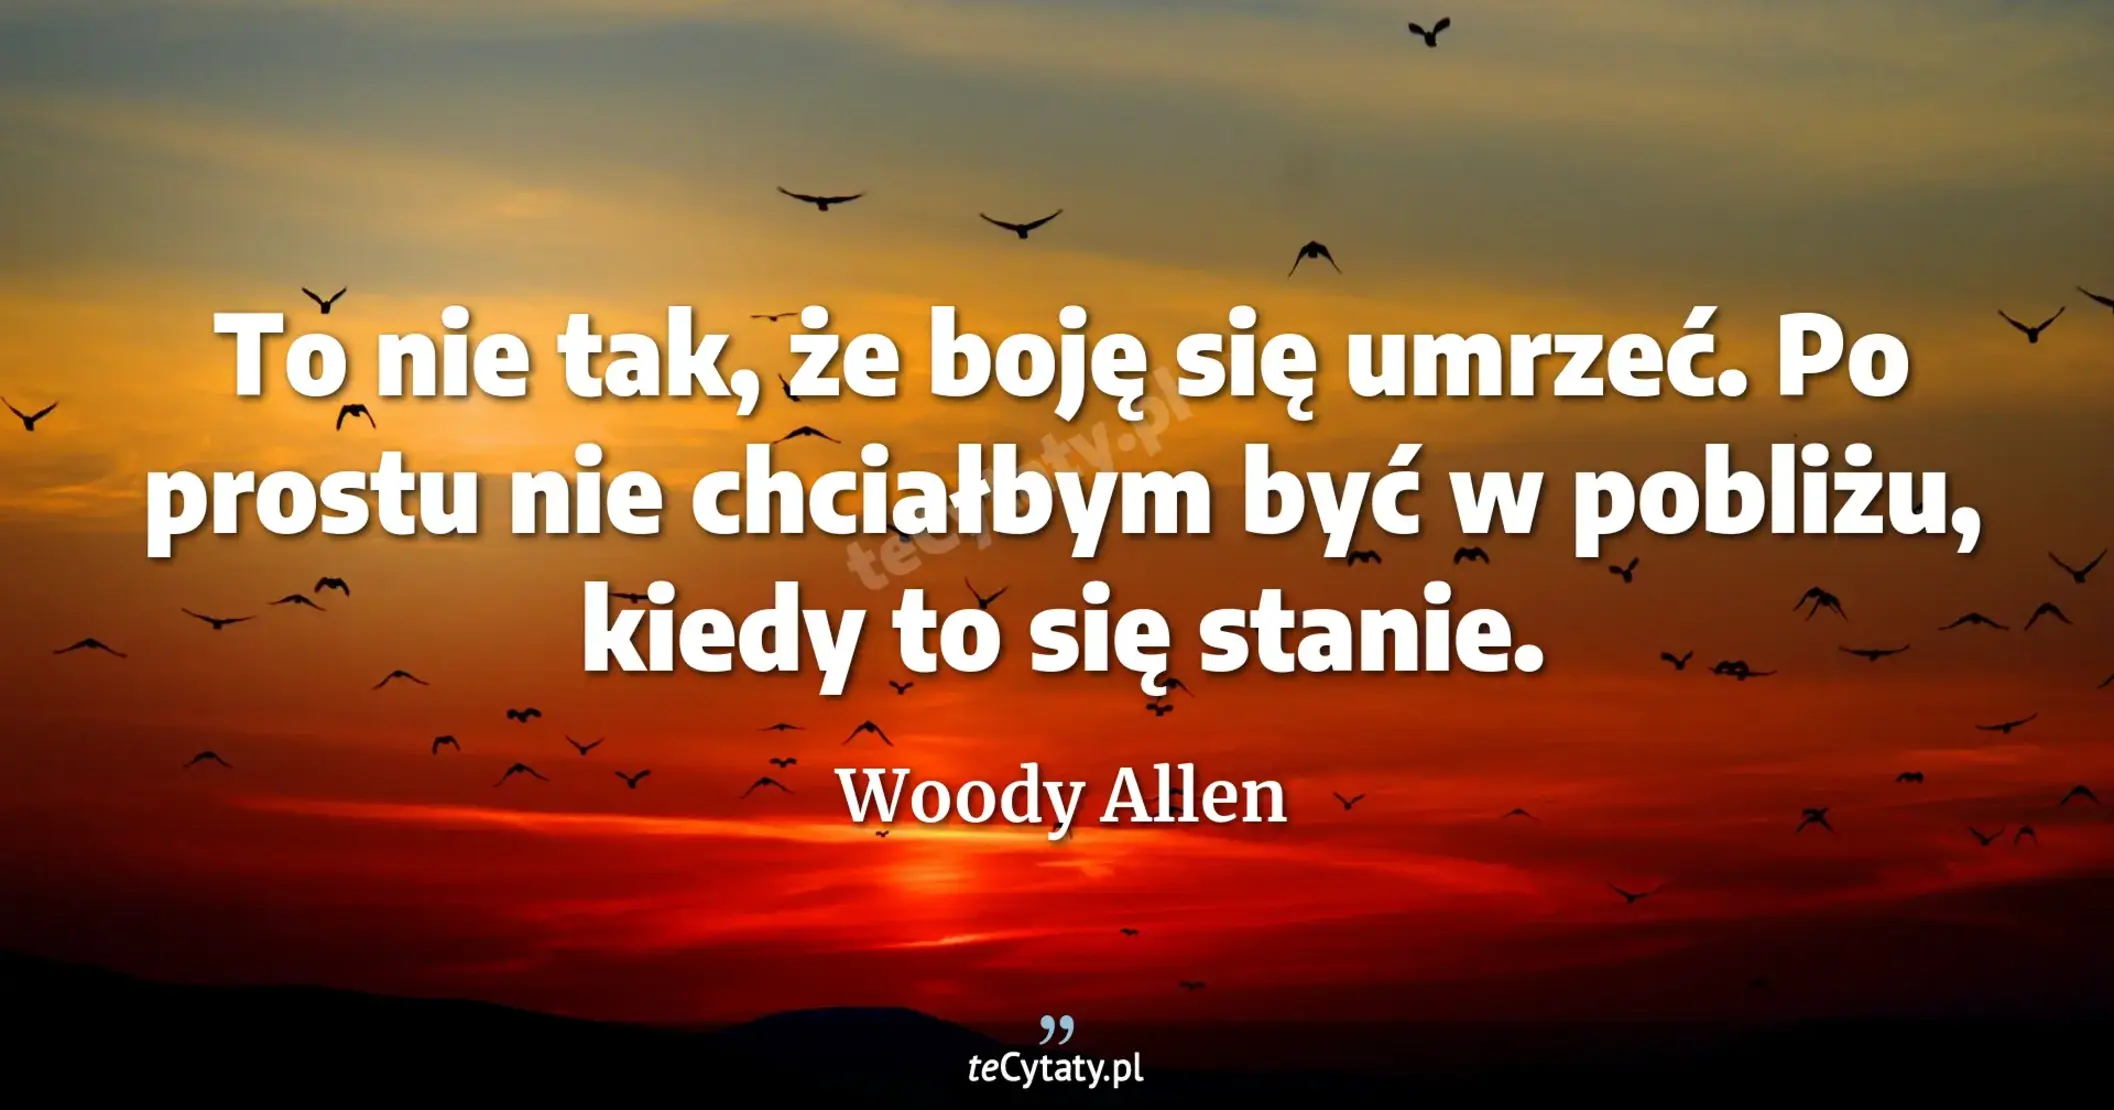 To nie tak, że boję się umrzeć. Po prostu nie chciałbym być w pobliżu, kiedy to się stanie. - Woody Allen